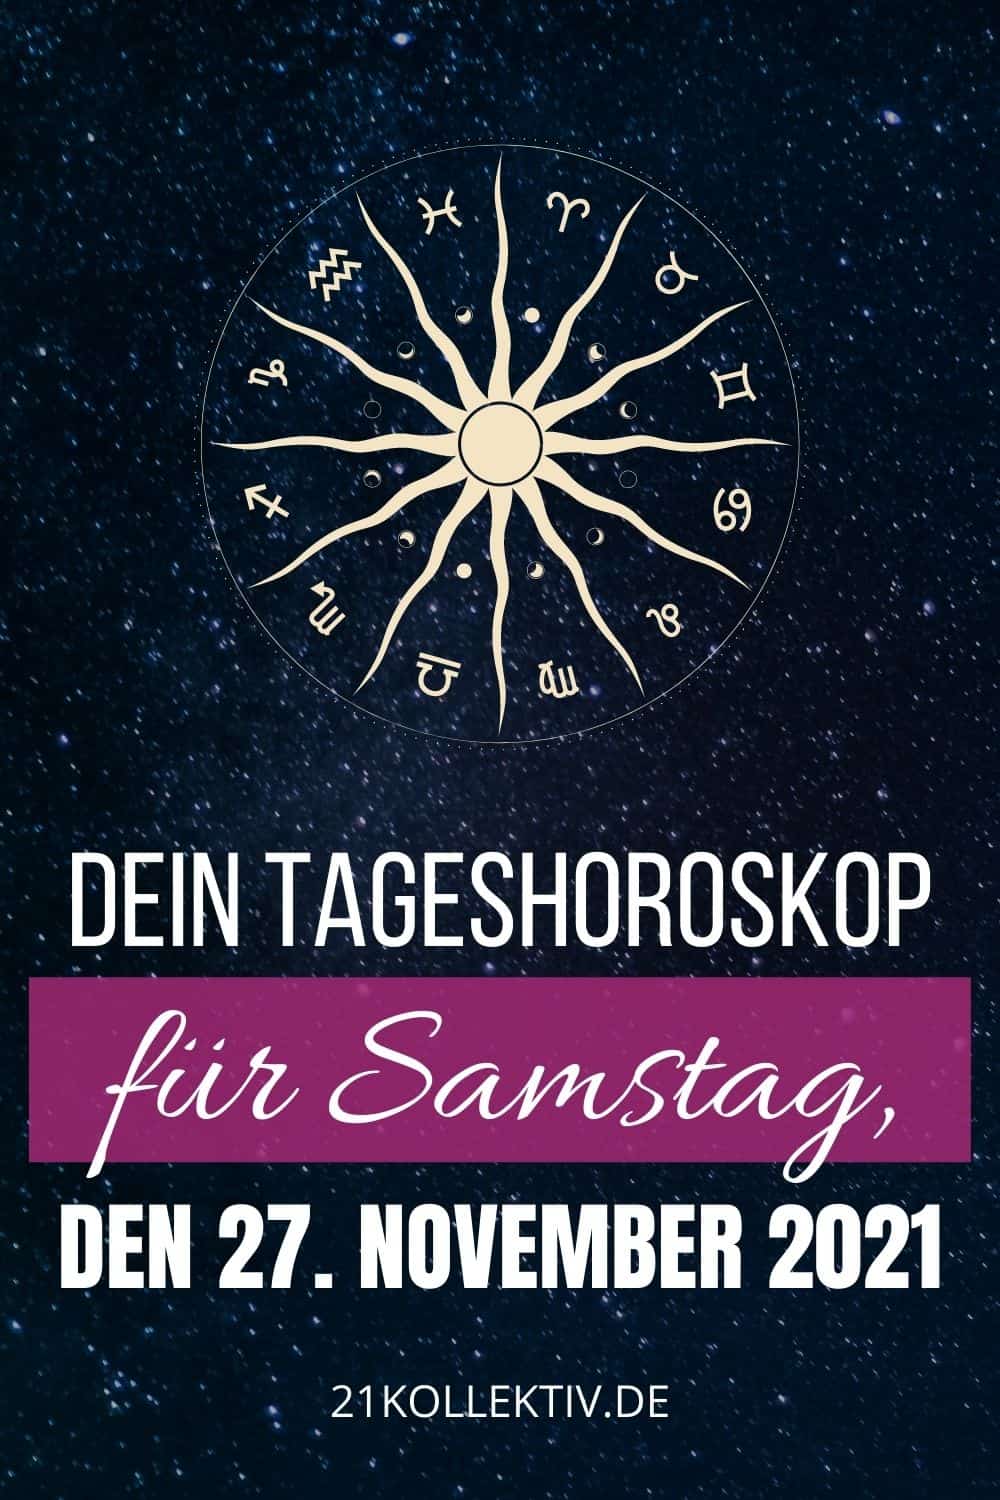 Dein Tageshoroskop für Samstag, den 27. November 2021 Pinterest